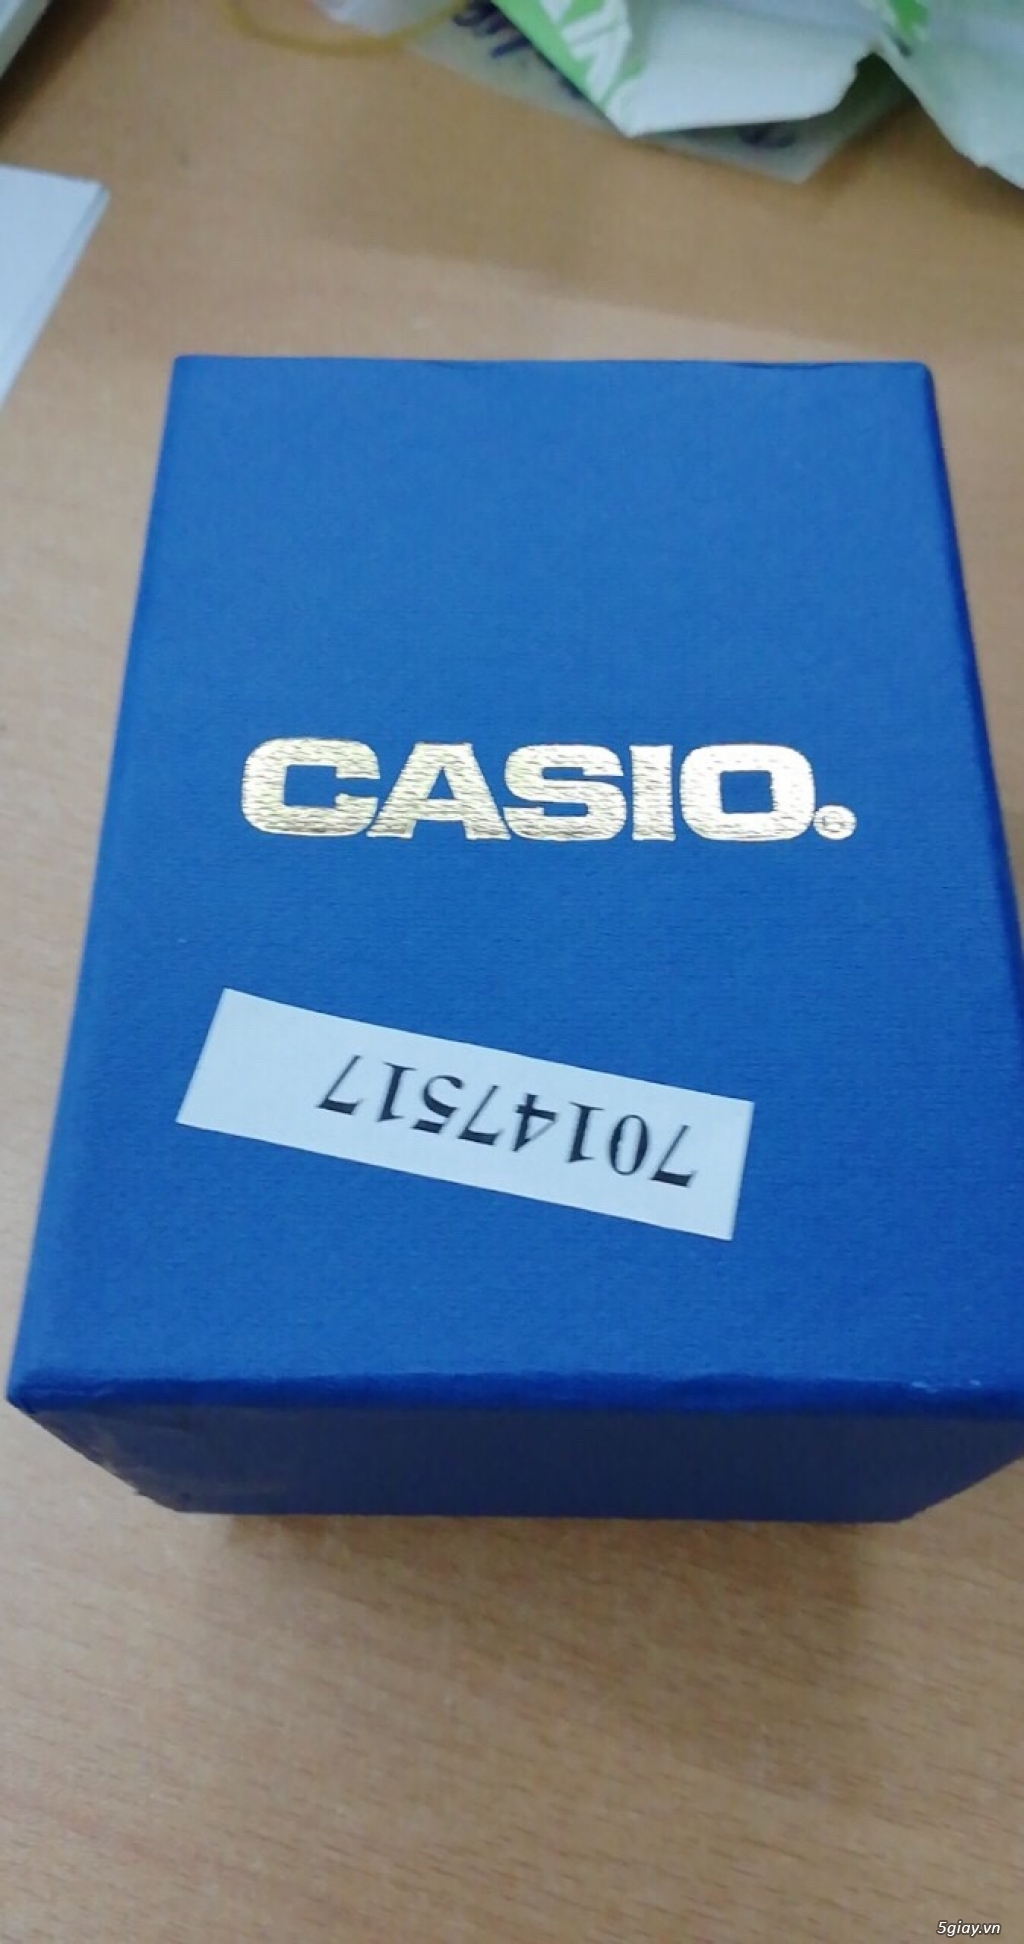 Đồng hồ Casio MQ-38-7A chính hãng, mới 100% End: 23h 03/10/19